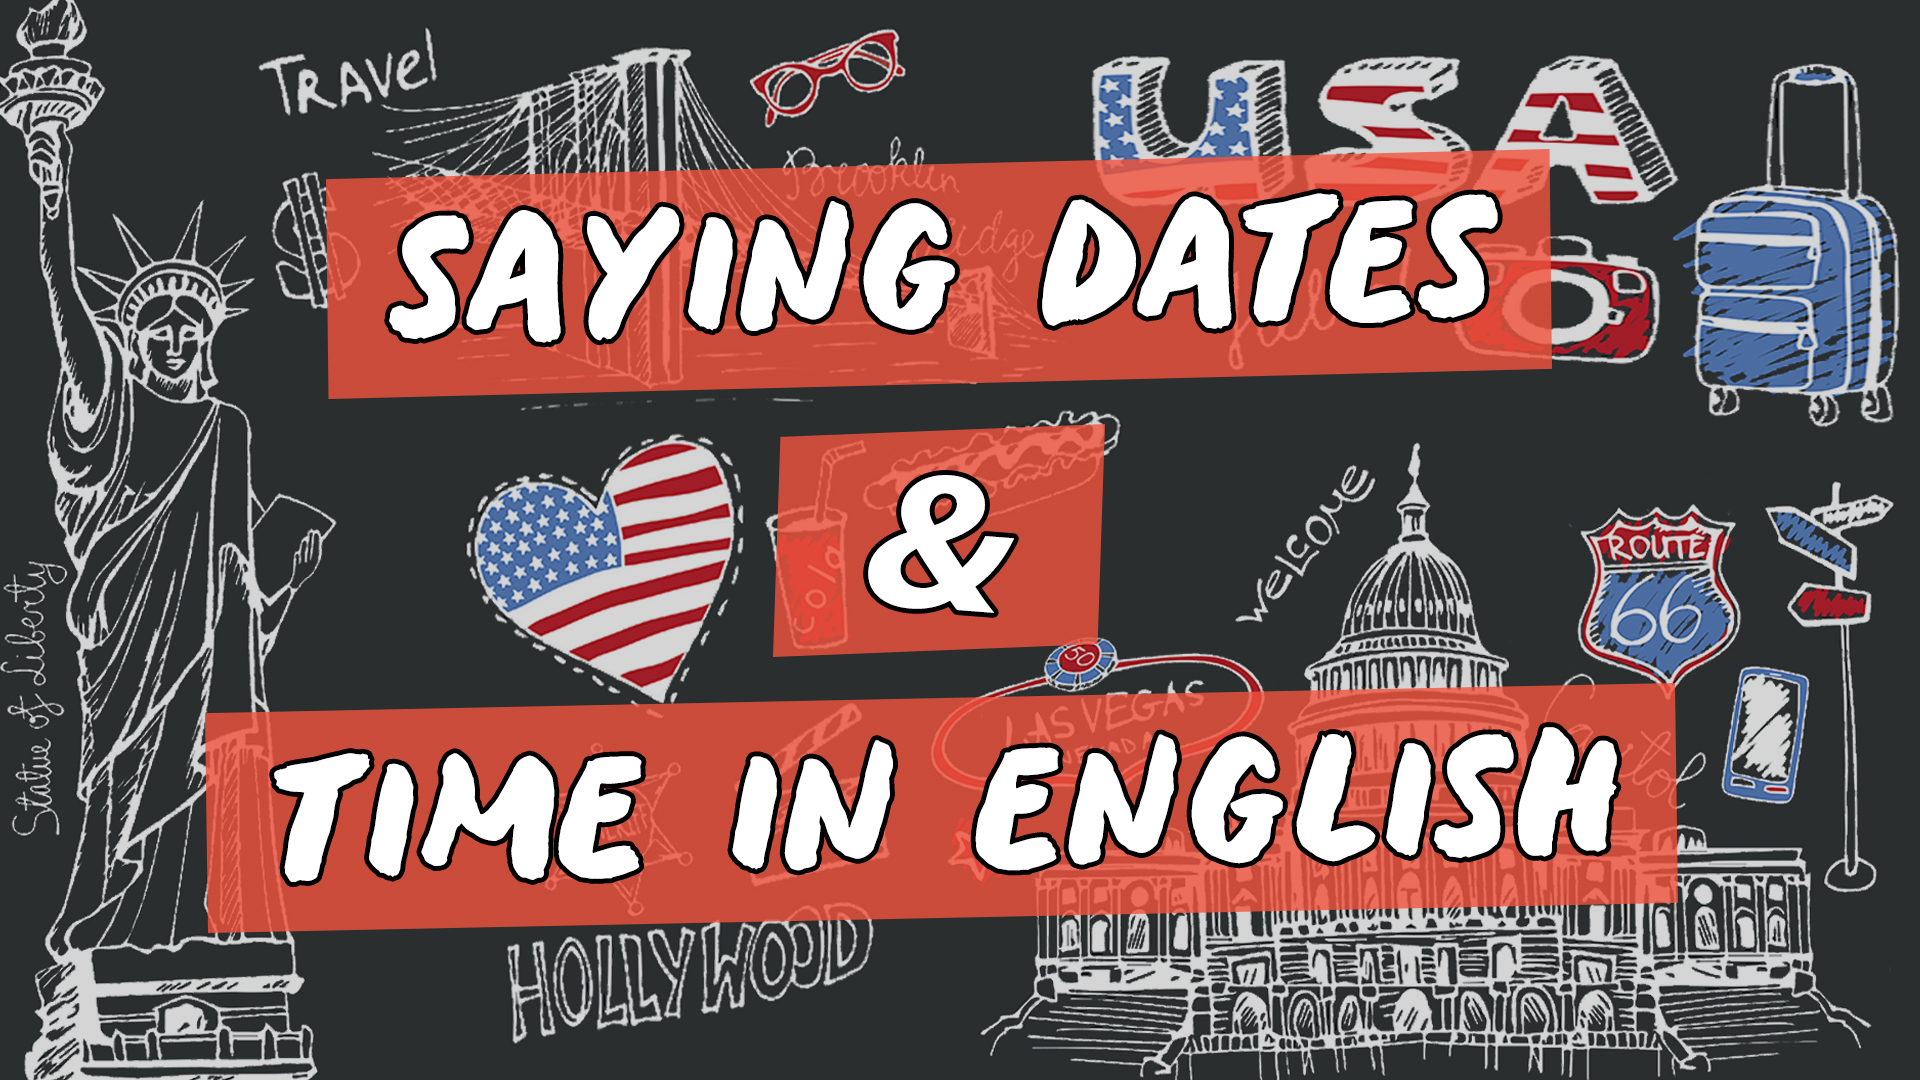 Escrito"Saying Dates & Time in English" sobre representação de vários elementos da cultura do inglês americano.